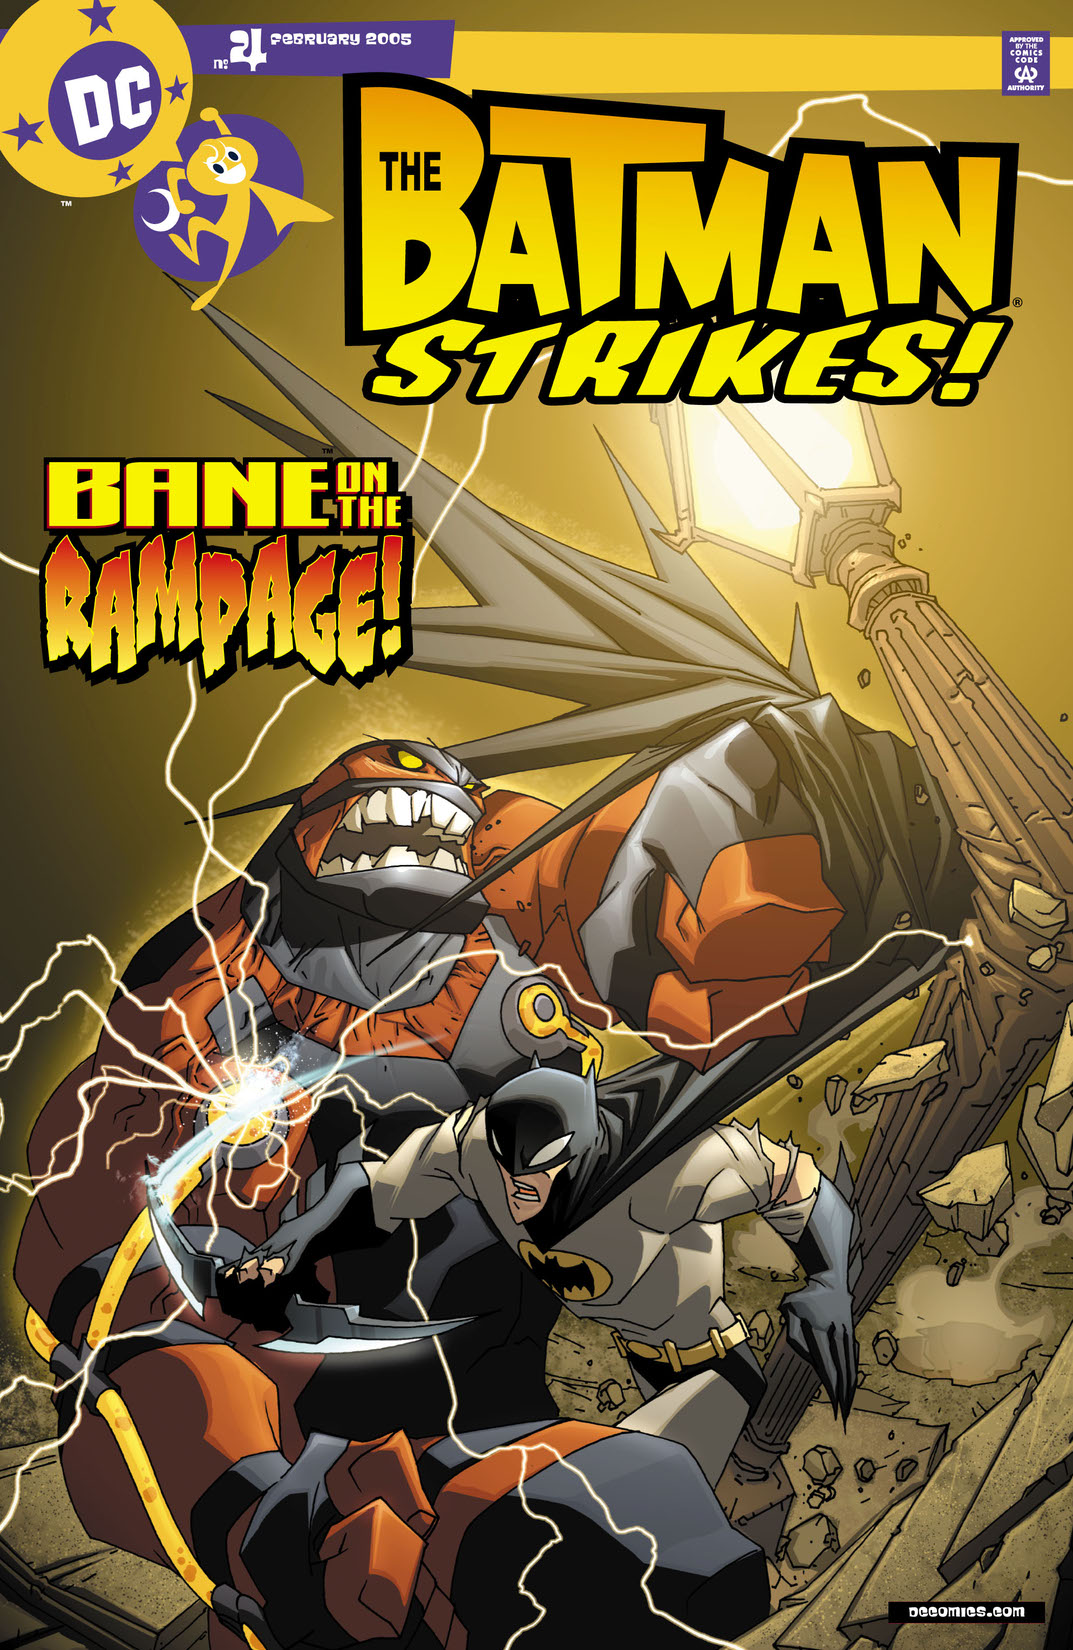 Batman Strikes! #4 preview images